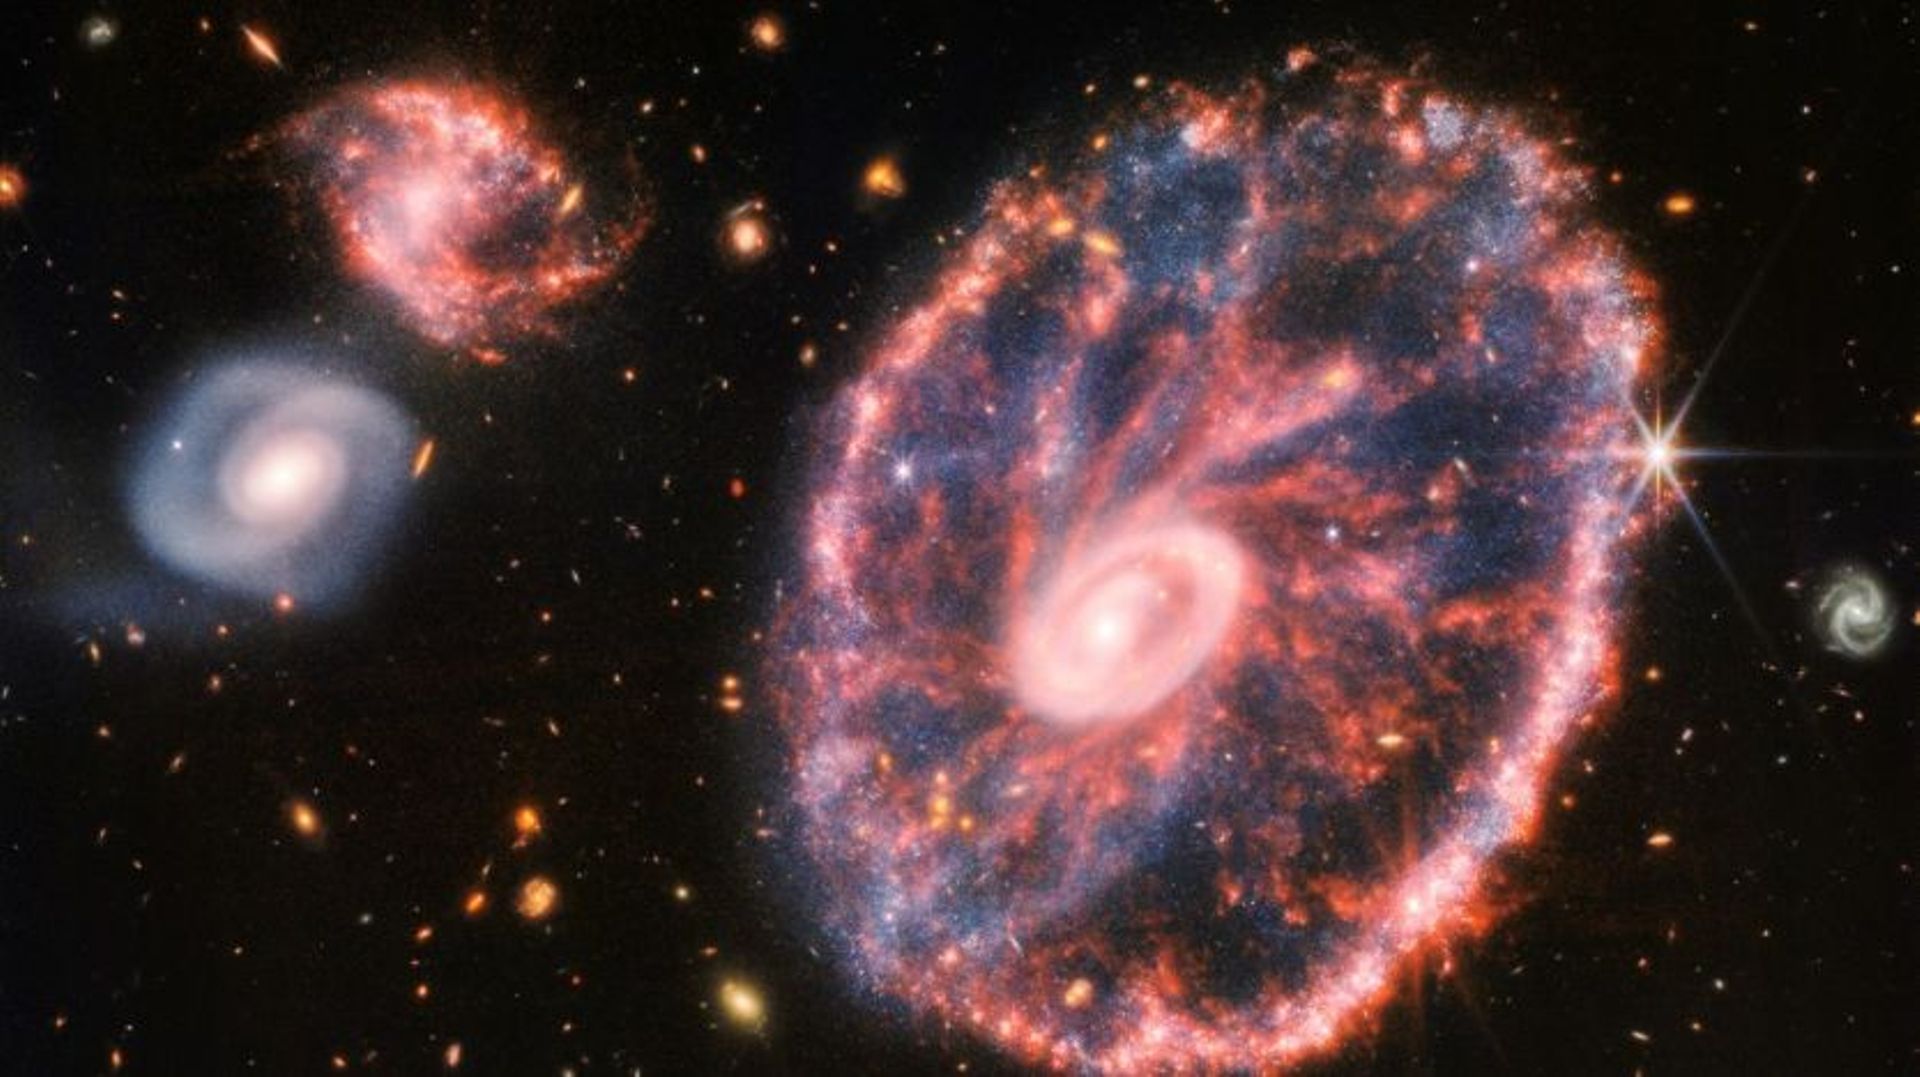 Image composite publiée le 2 août 2022 par la Nasa de la galaxie de la Roue de chariot et deux autres galaxies plus petites observées par le télescope James Webb